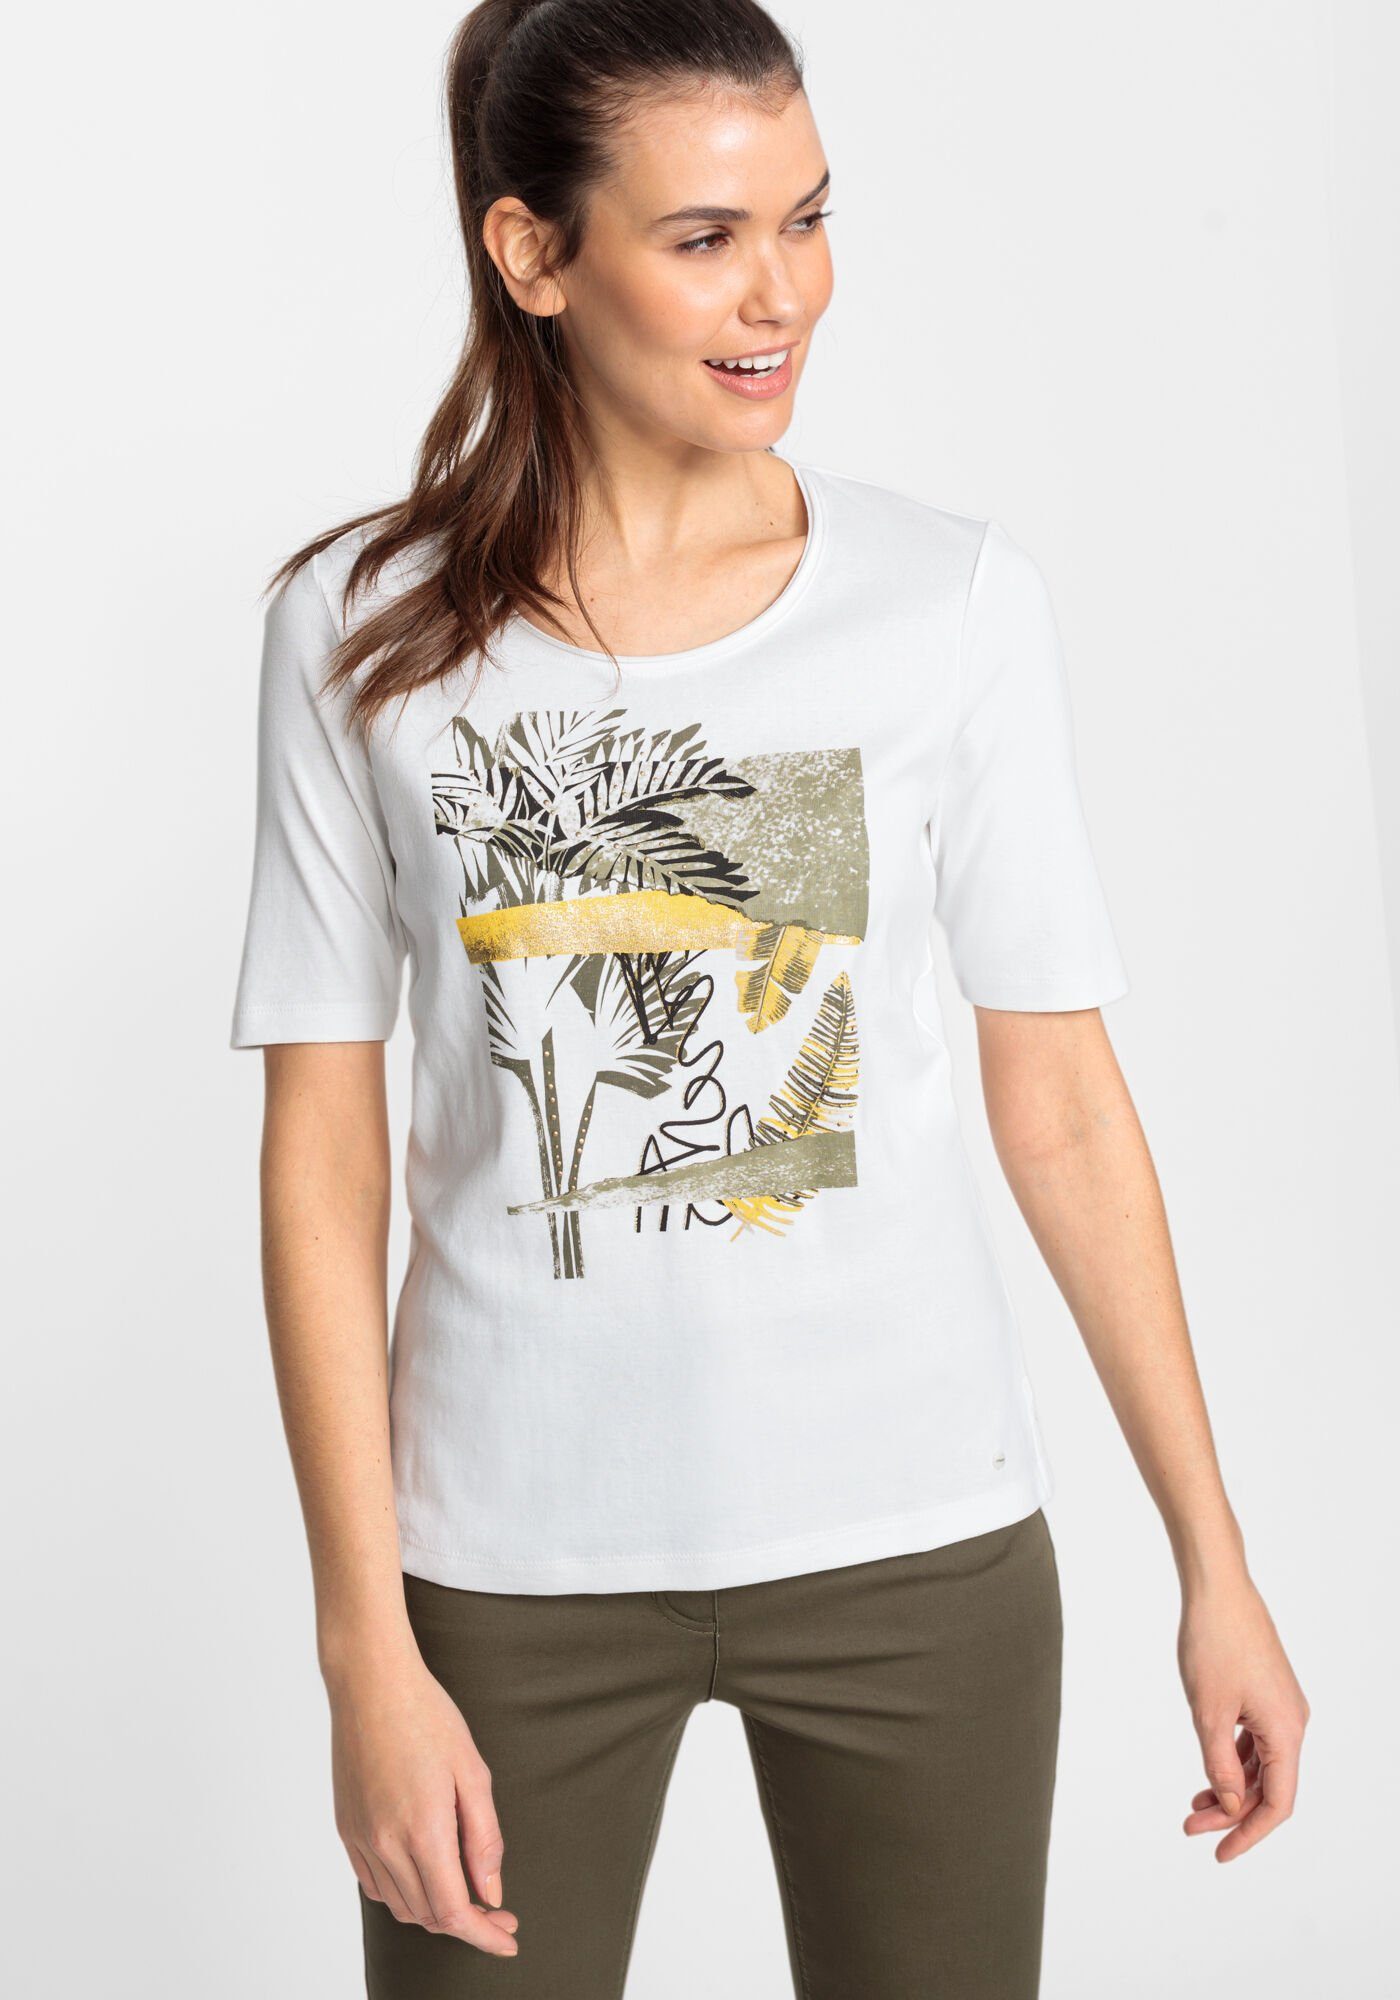 Olsen Rundhalsshirt mit Blätterprint schönem